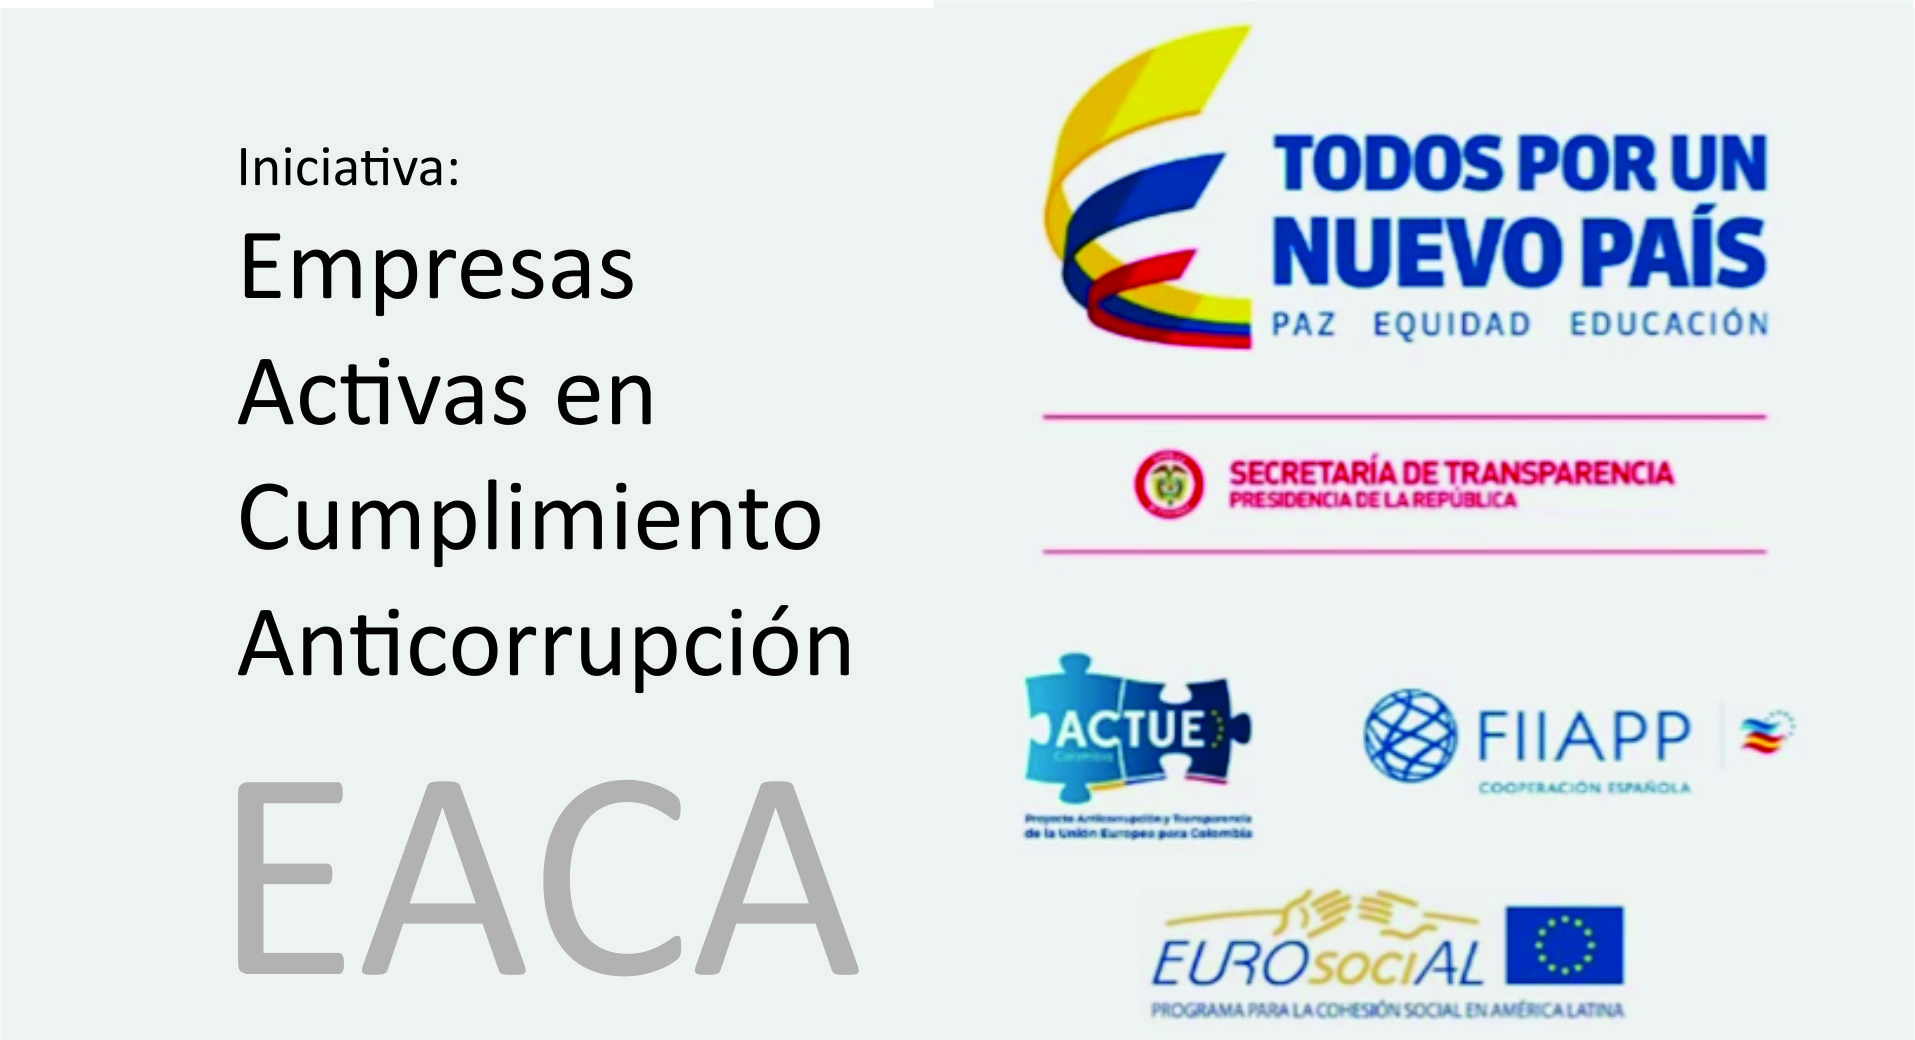 Iniciativa: Empresas Activas en Cumplimiento Anticorrupcin -EACA-